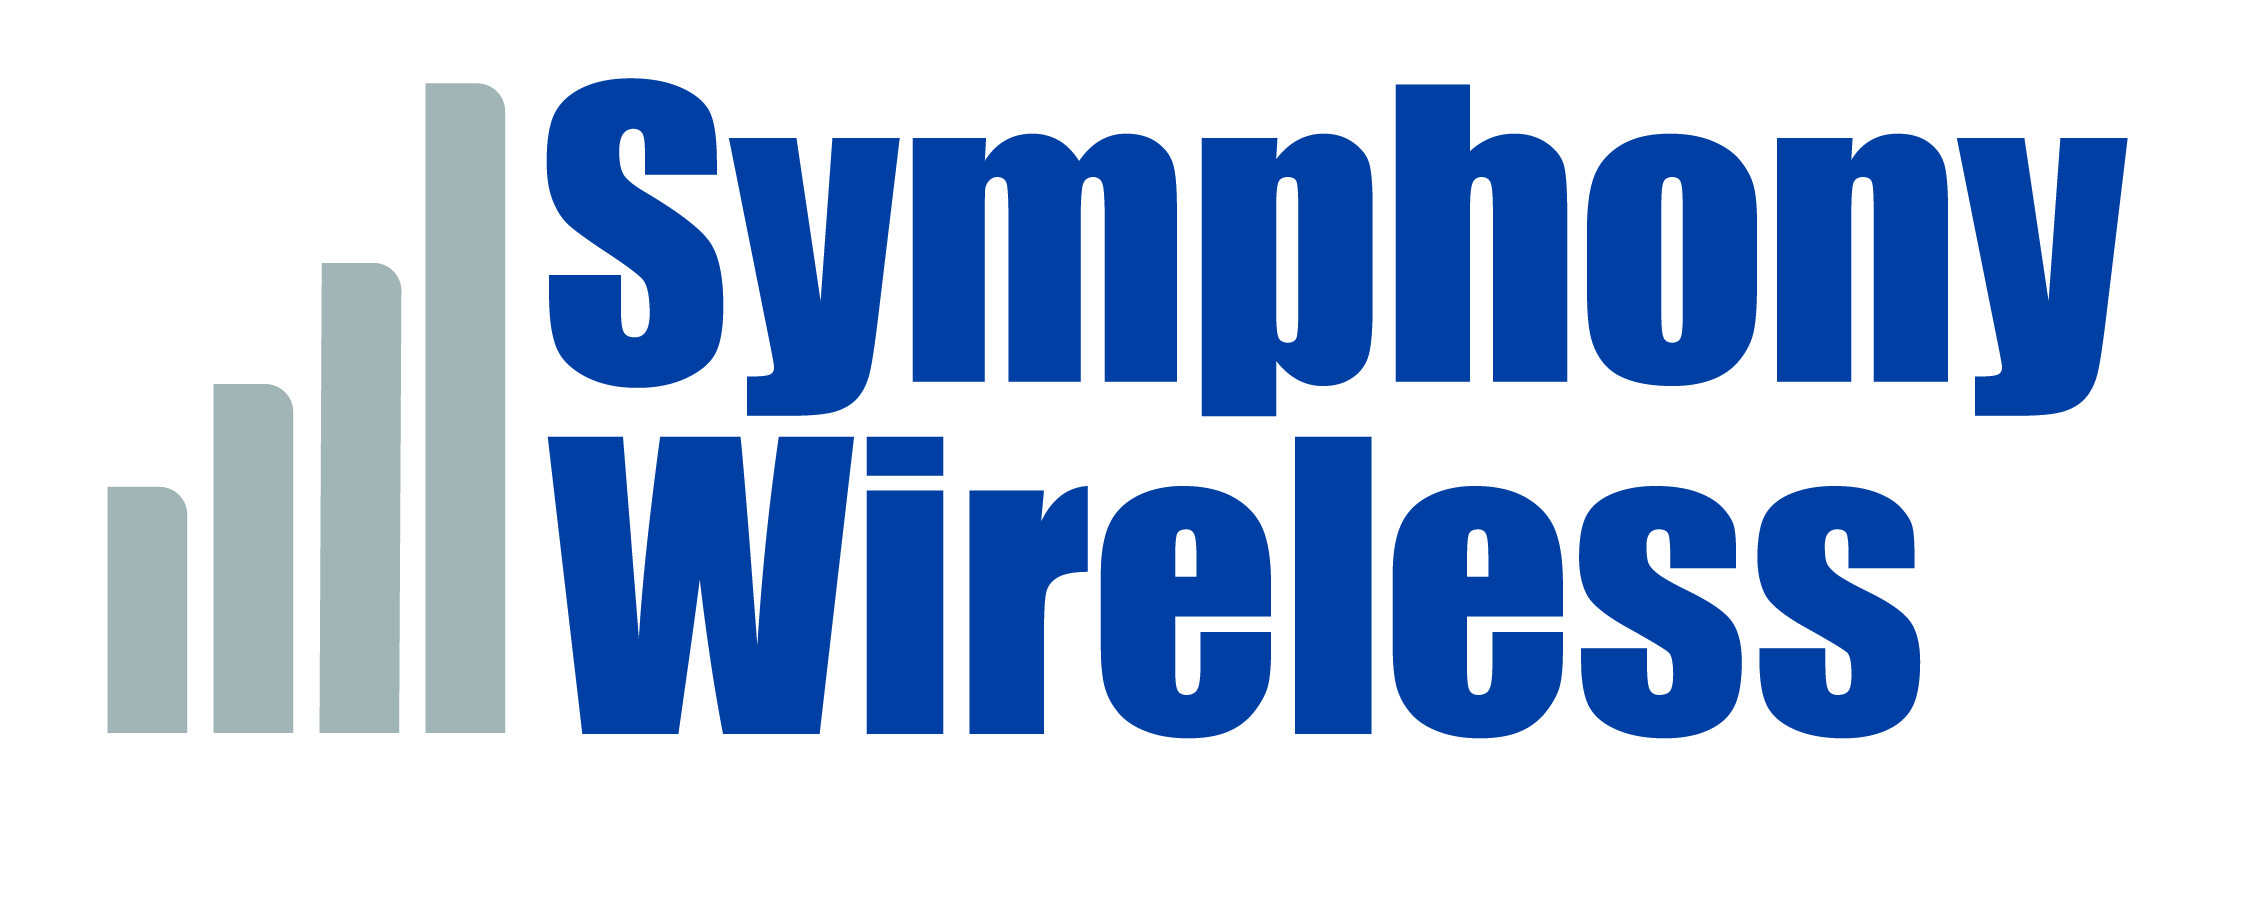 symphony logo fin 1a 01 1 1